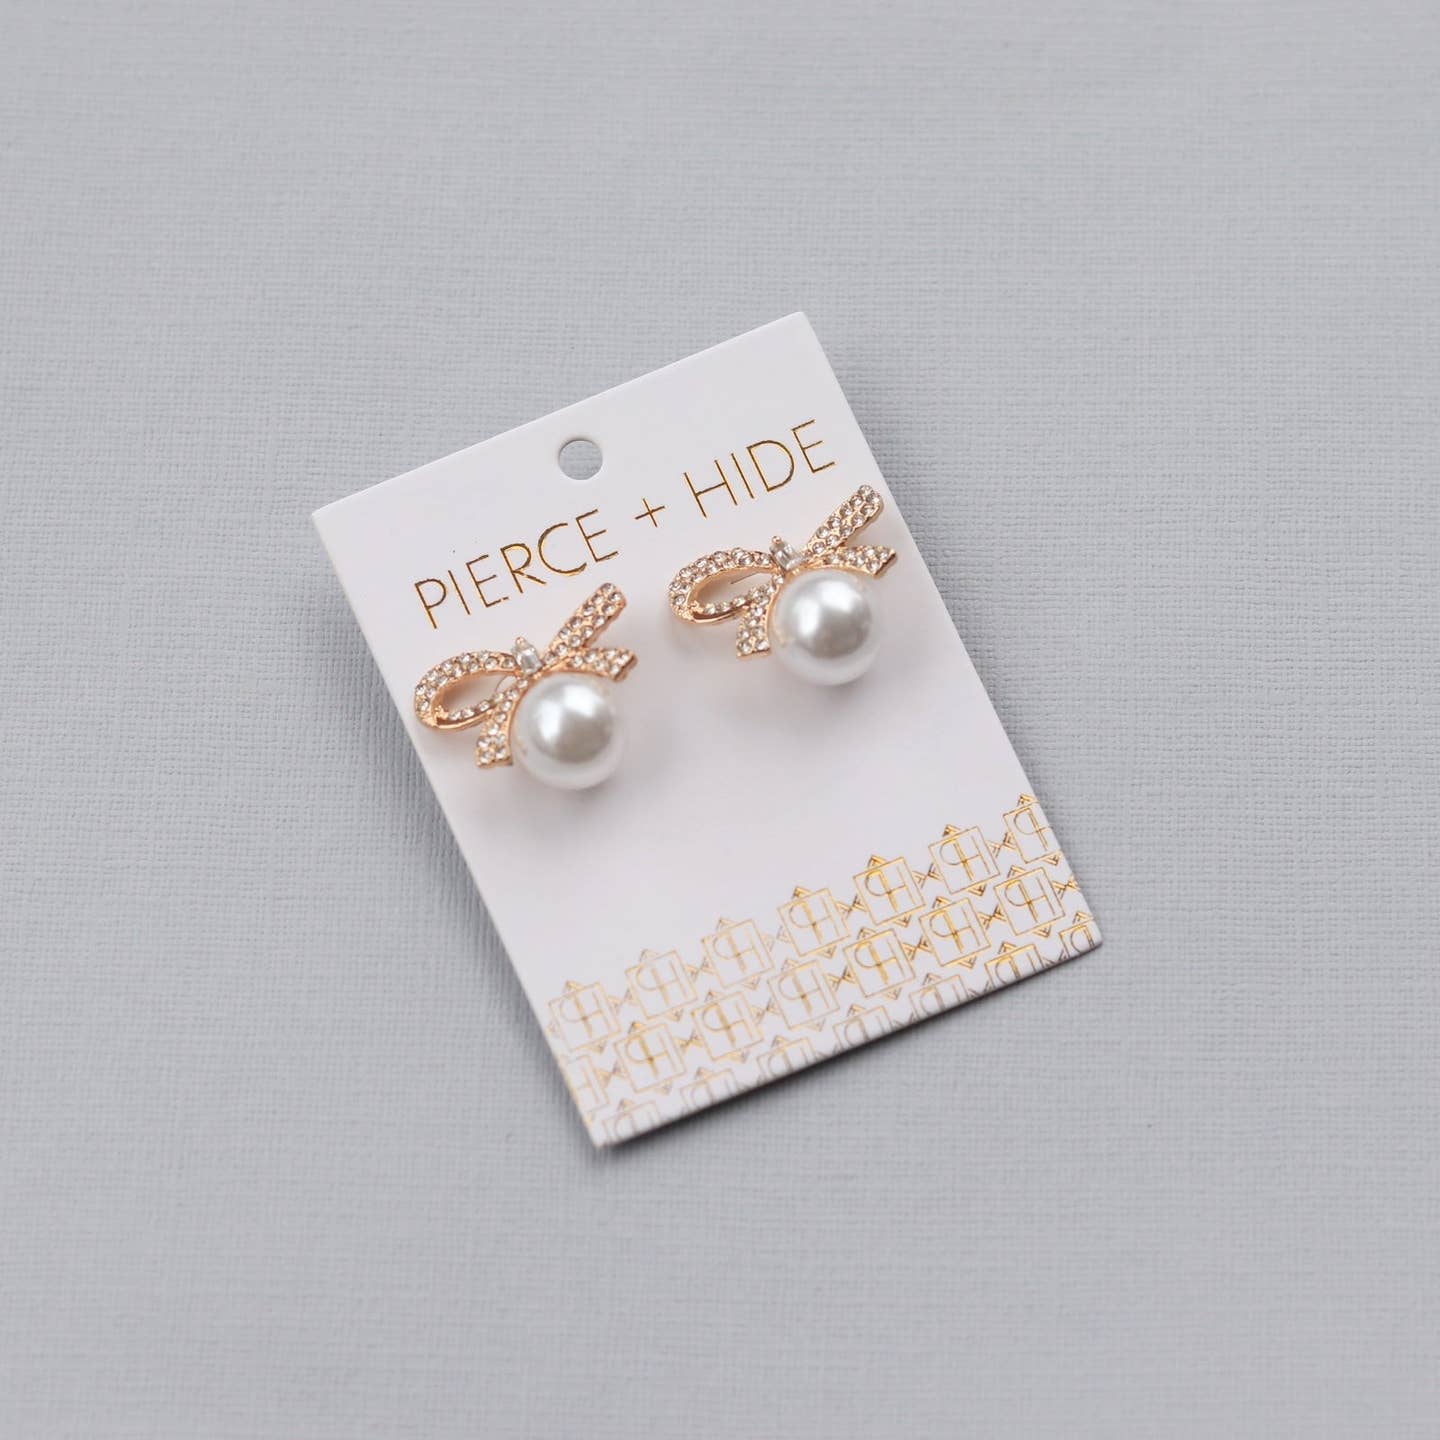 Pierce + Hide: Pearl Bow Statement Stud Earrings